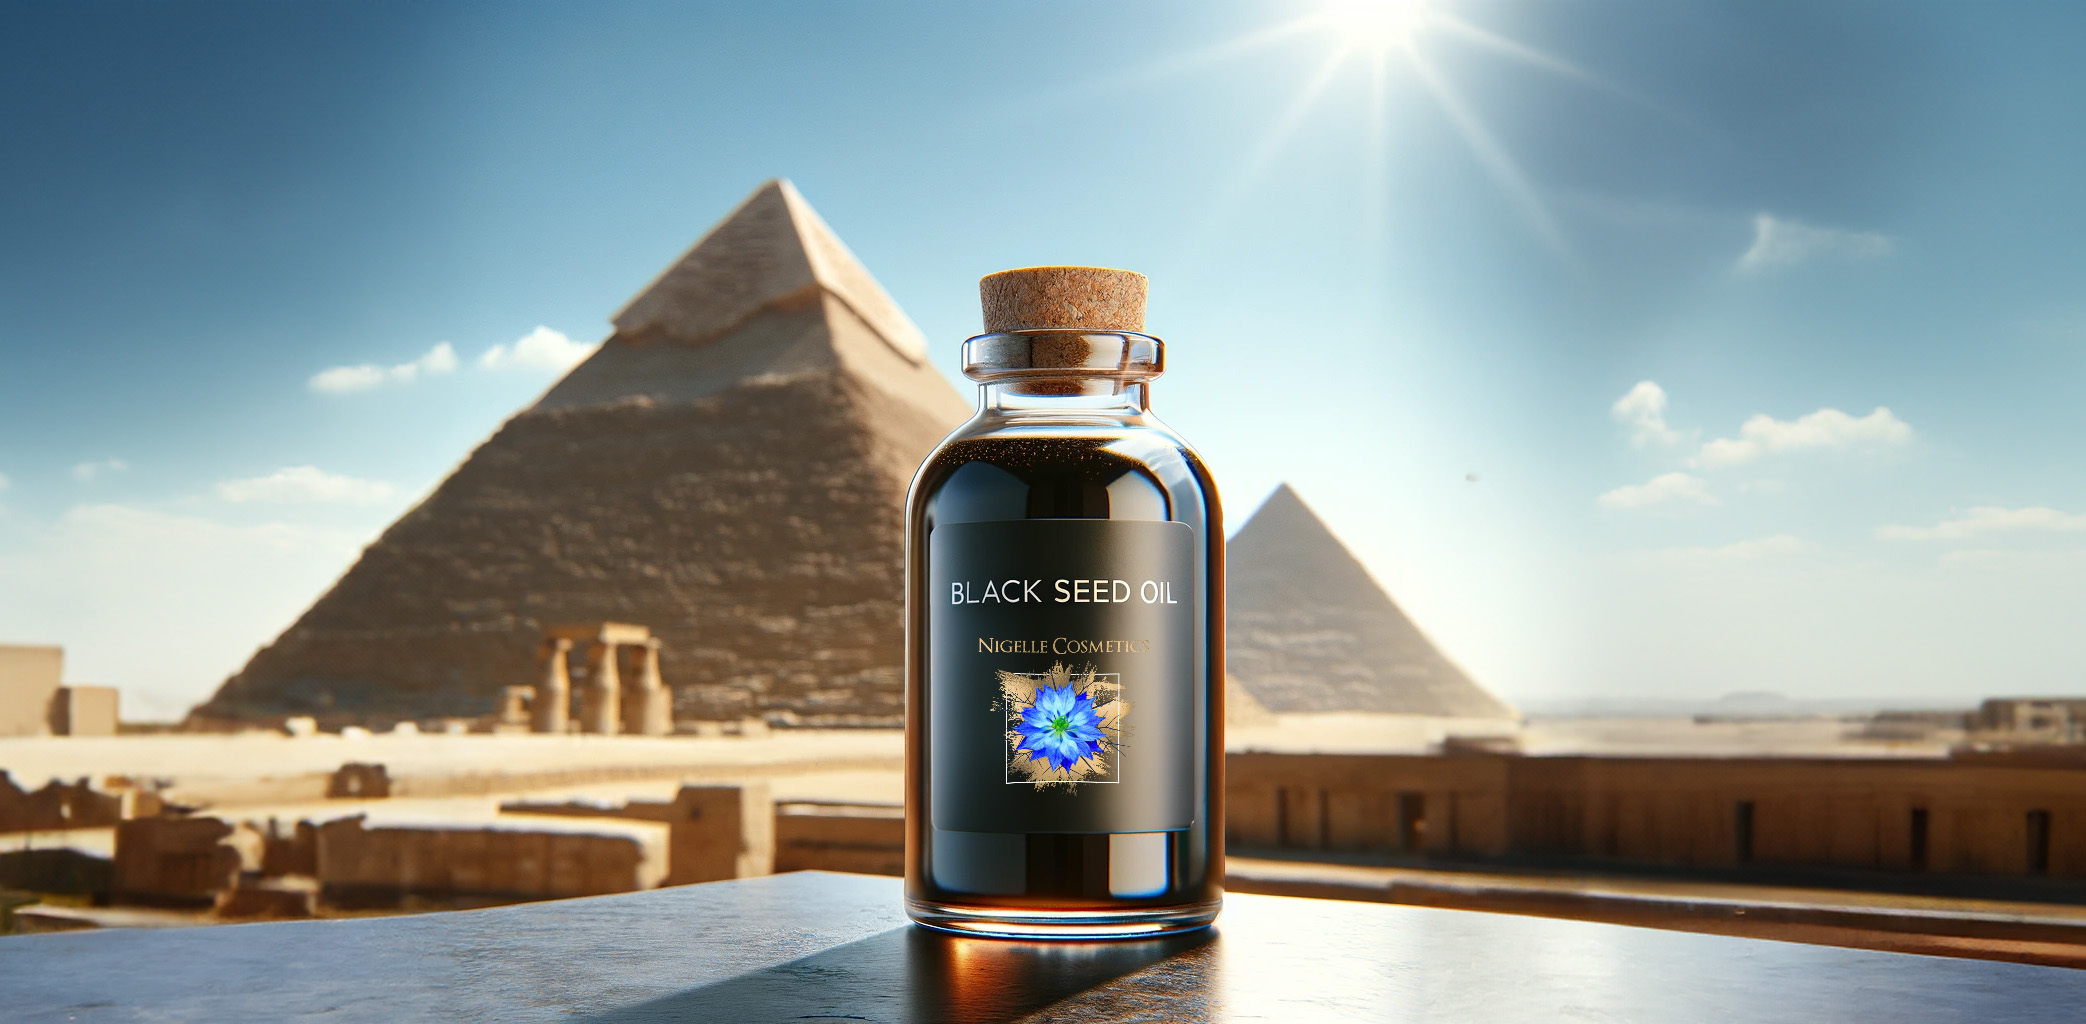 Bouteille d'huile de nigelle de Nigelle Cosmetics posée sur une surface en bois avec les pyramides d'Égypte en arrière-plan sous un ciel ensoleillé.